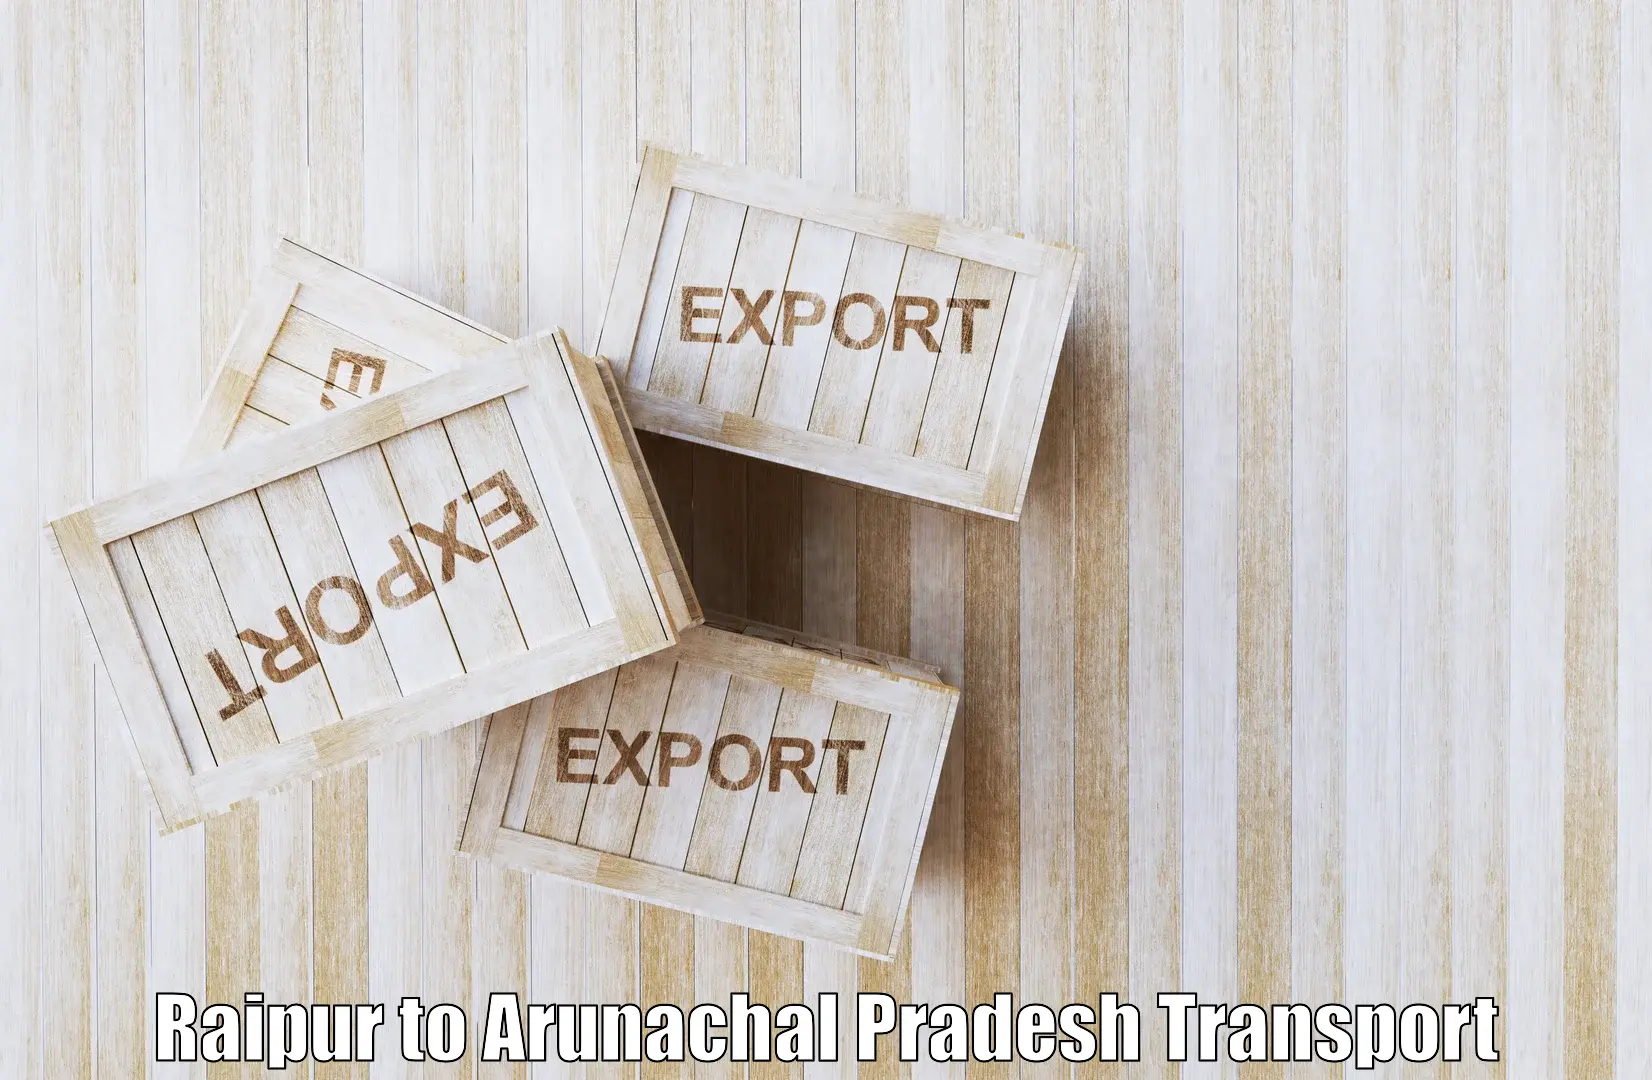 Inland transportation services in Raipur to Arunachal Pradesh